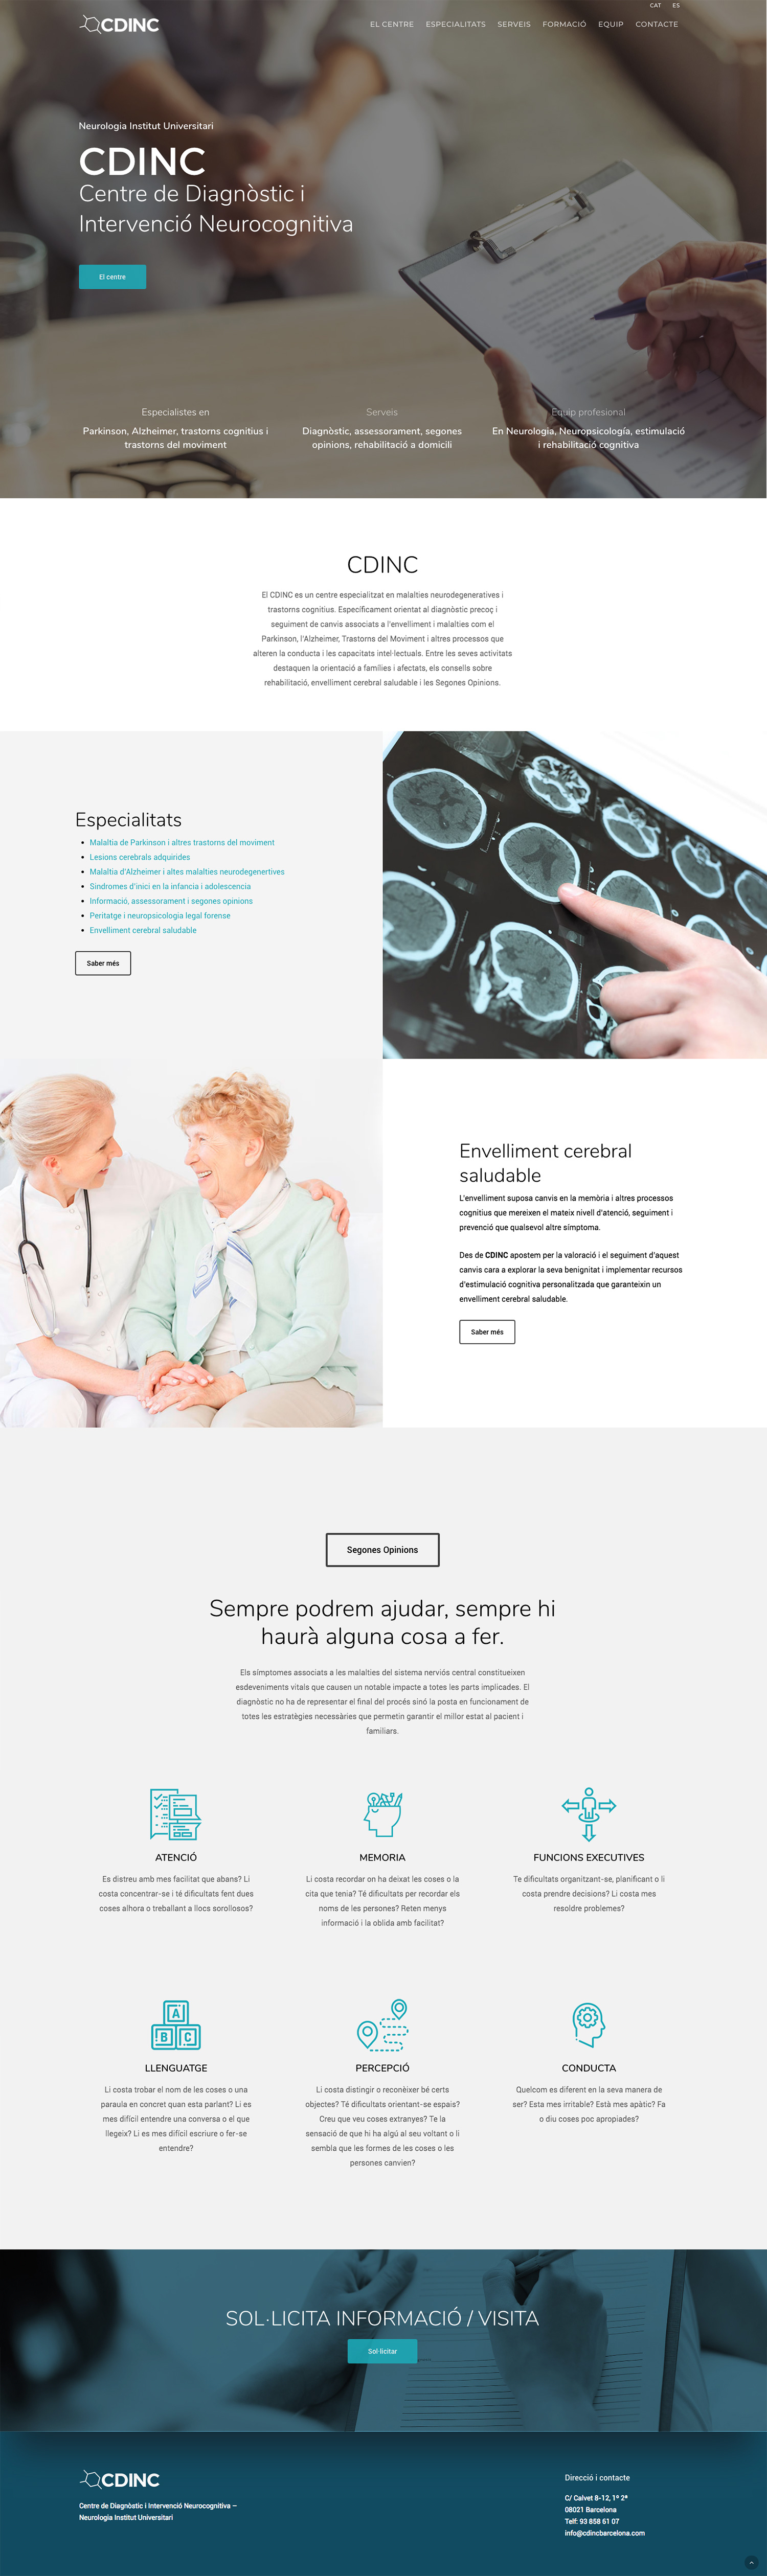 CDINC ★ Centro de diagnóstico e intervención neurocognitiva ★ Website